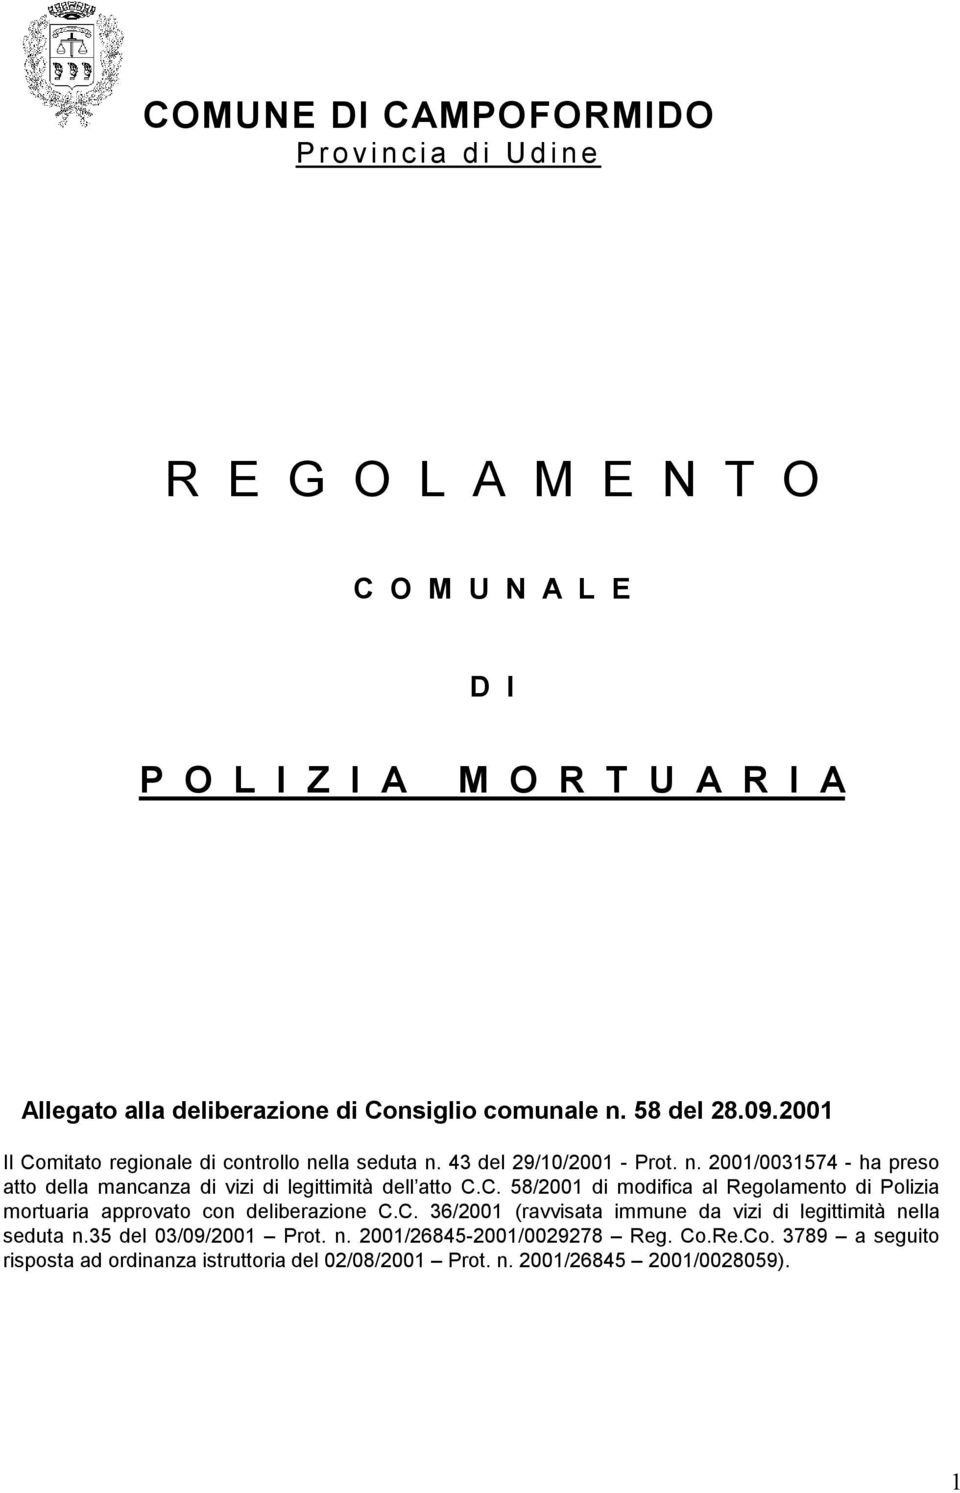 C. 58/2001 di modifica al Regolamento di Polizia mortuaria approvato con deliberazione C.C. 36/2001 (ravvisata immune da vizi di legittimità nella seduta n.